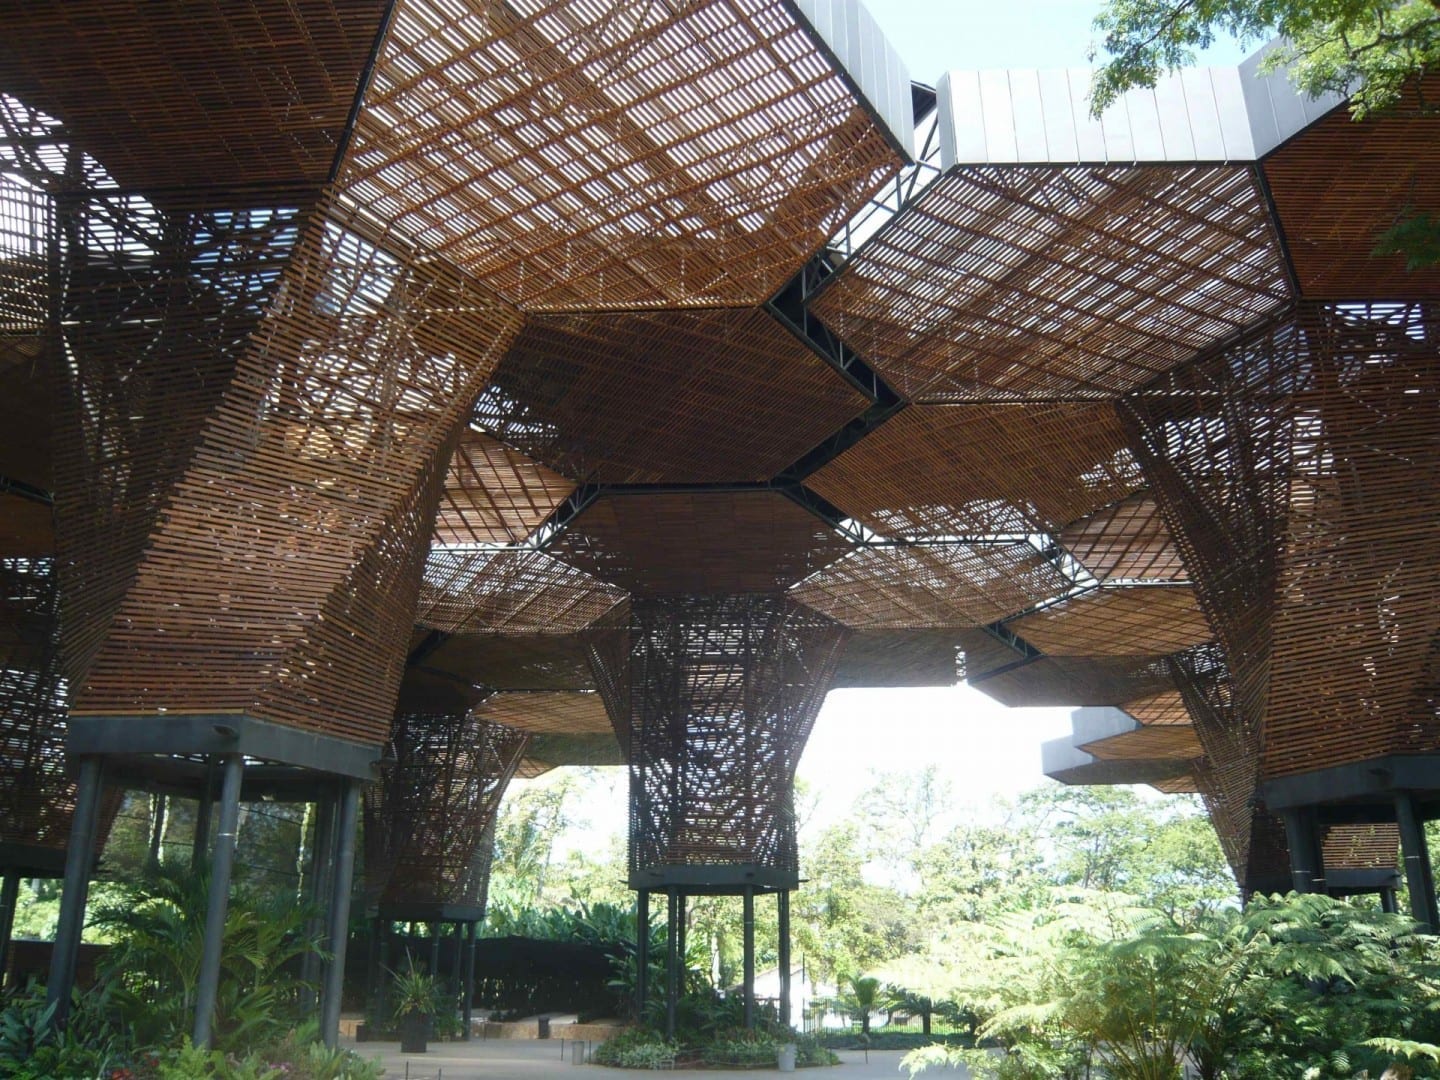 La estructura moderna para la exhibición de orquídeas en el Jardín Botánico El Poblado (Medellín) Colombia